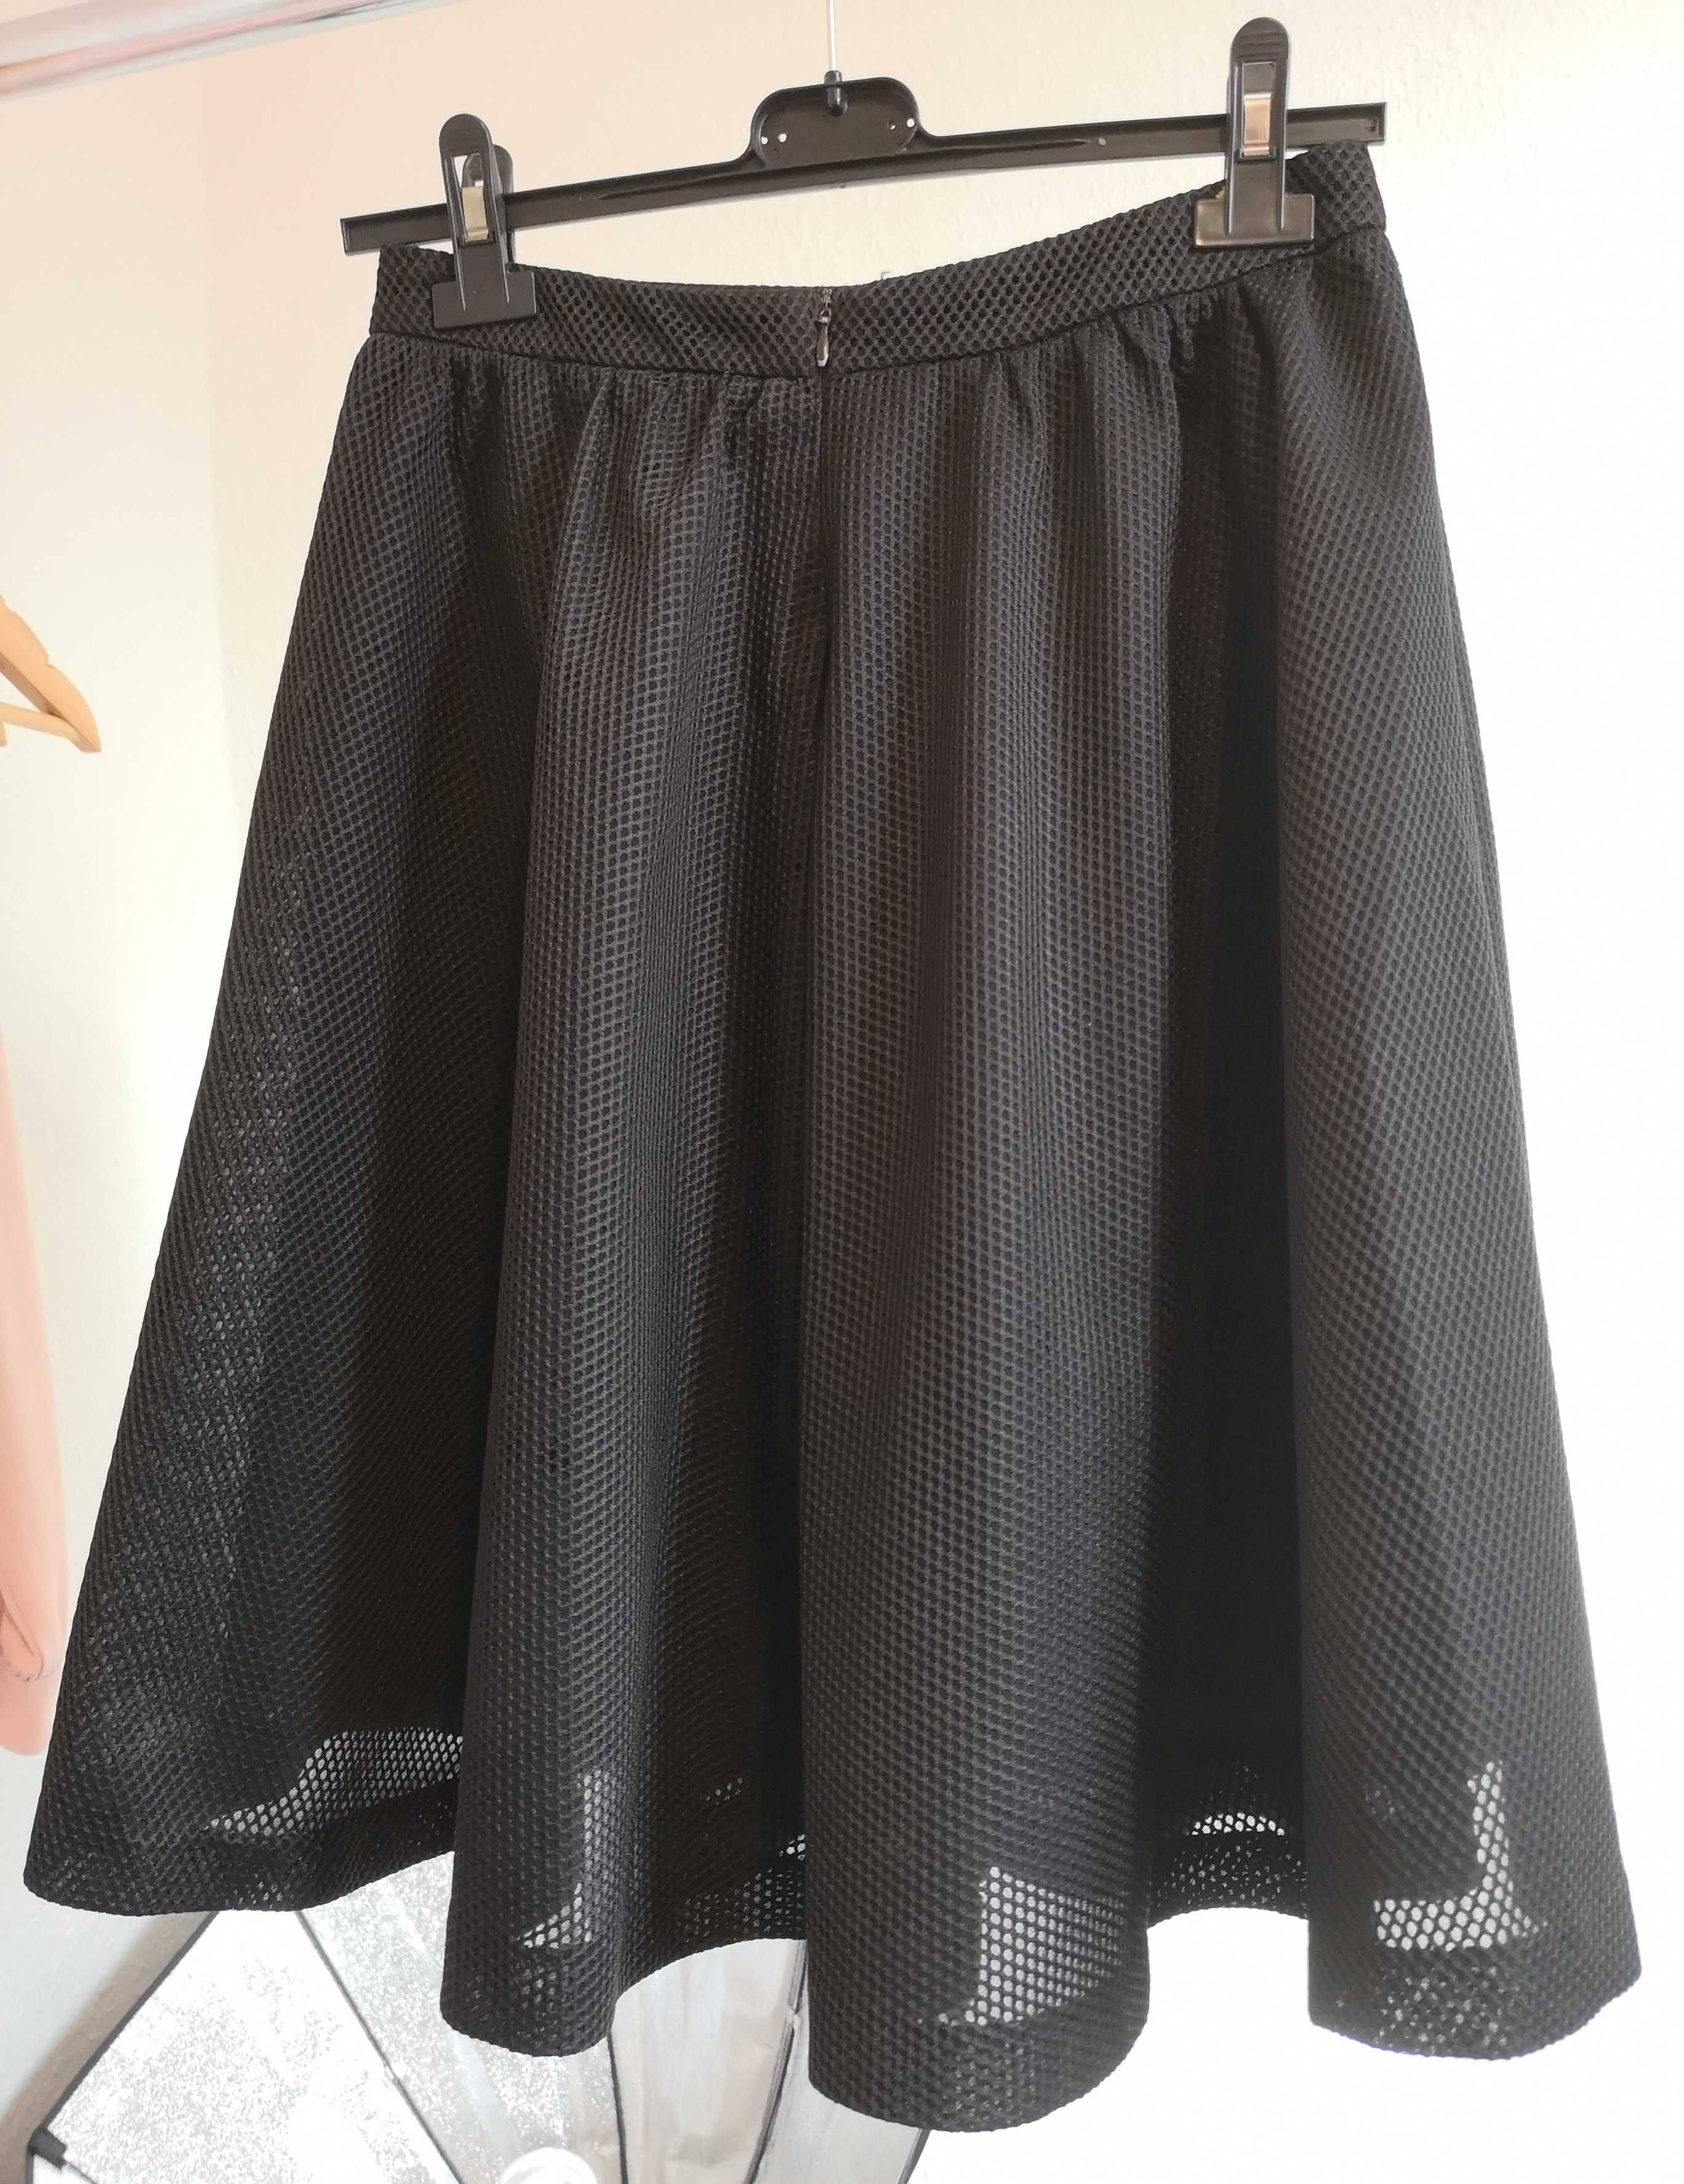 Elegancka czarna spódnica RESERVED, rozmiar 36, siateczkowy materiał